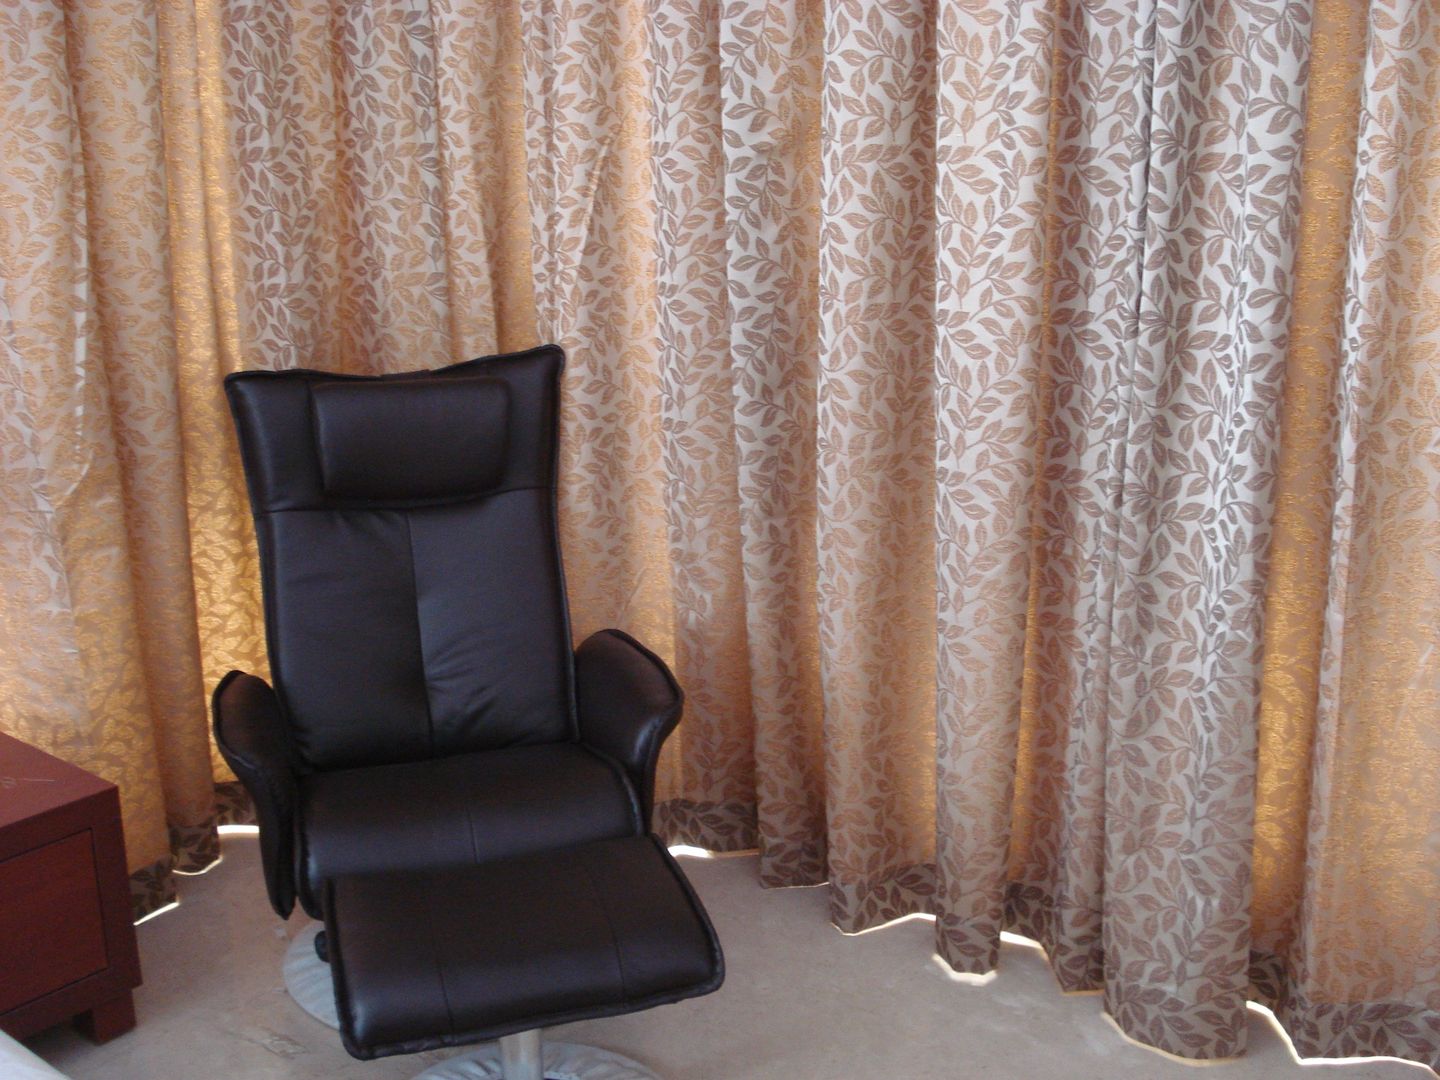 Private Apartment in Mumbai - 2300 sq. ft., DS DESIGN STUDIO DS DESIGN STUDIO غرفة نوم Sofas & chaise longue